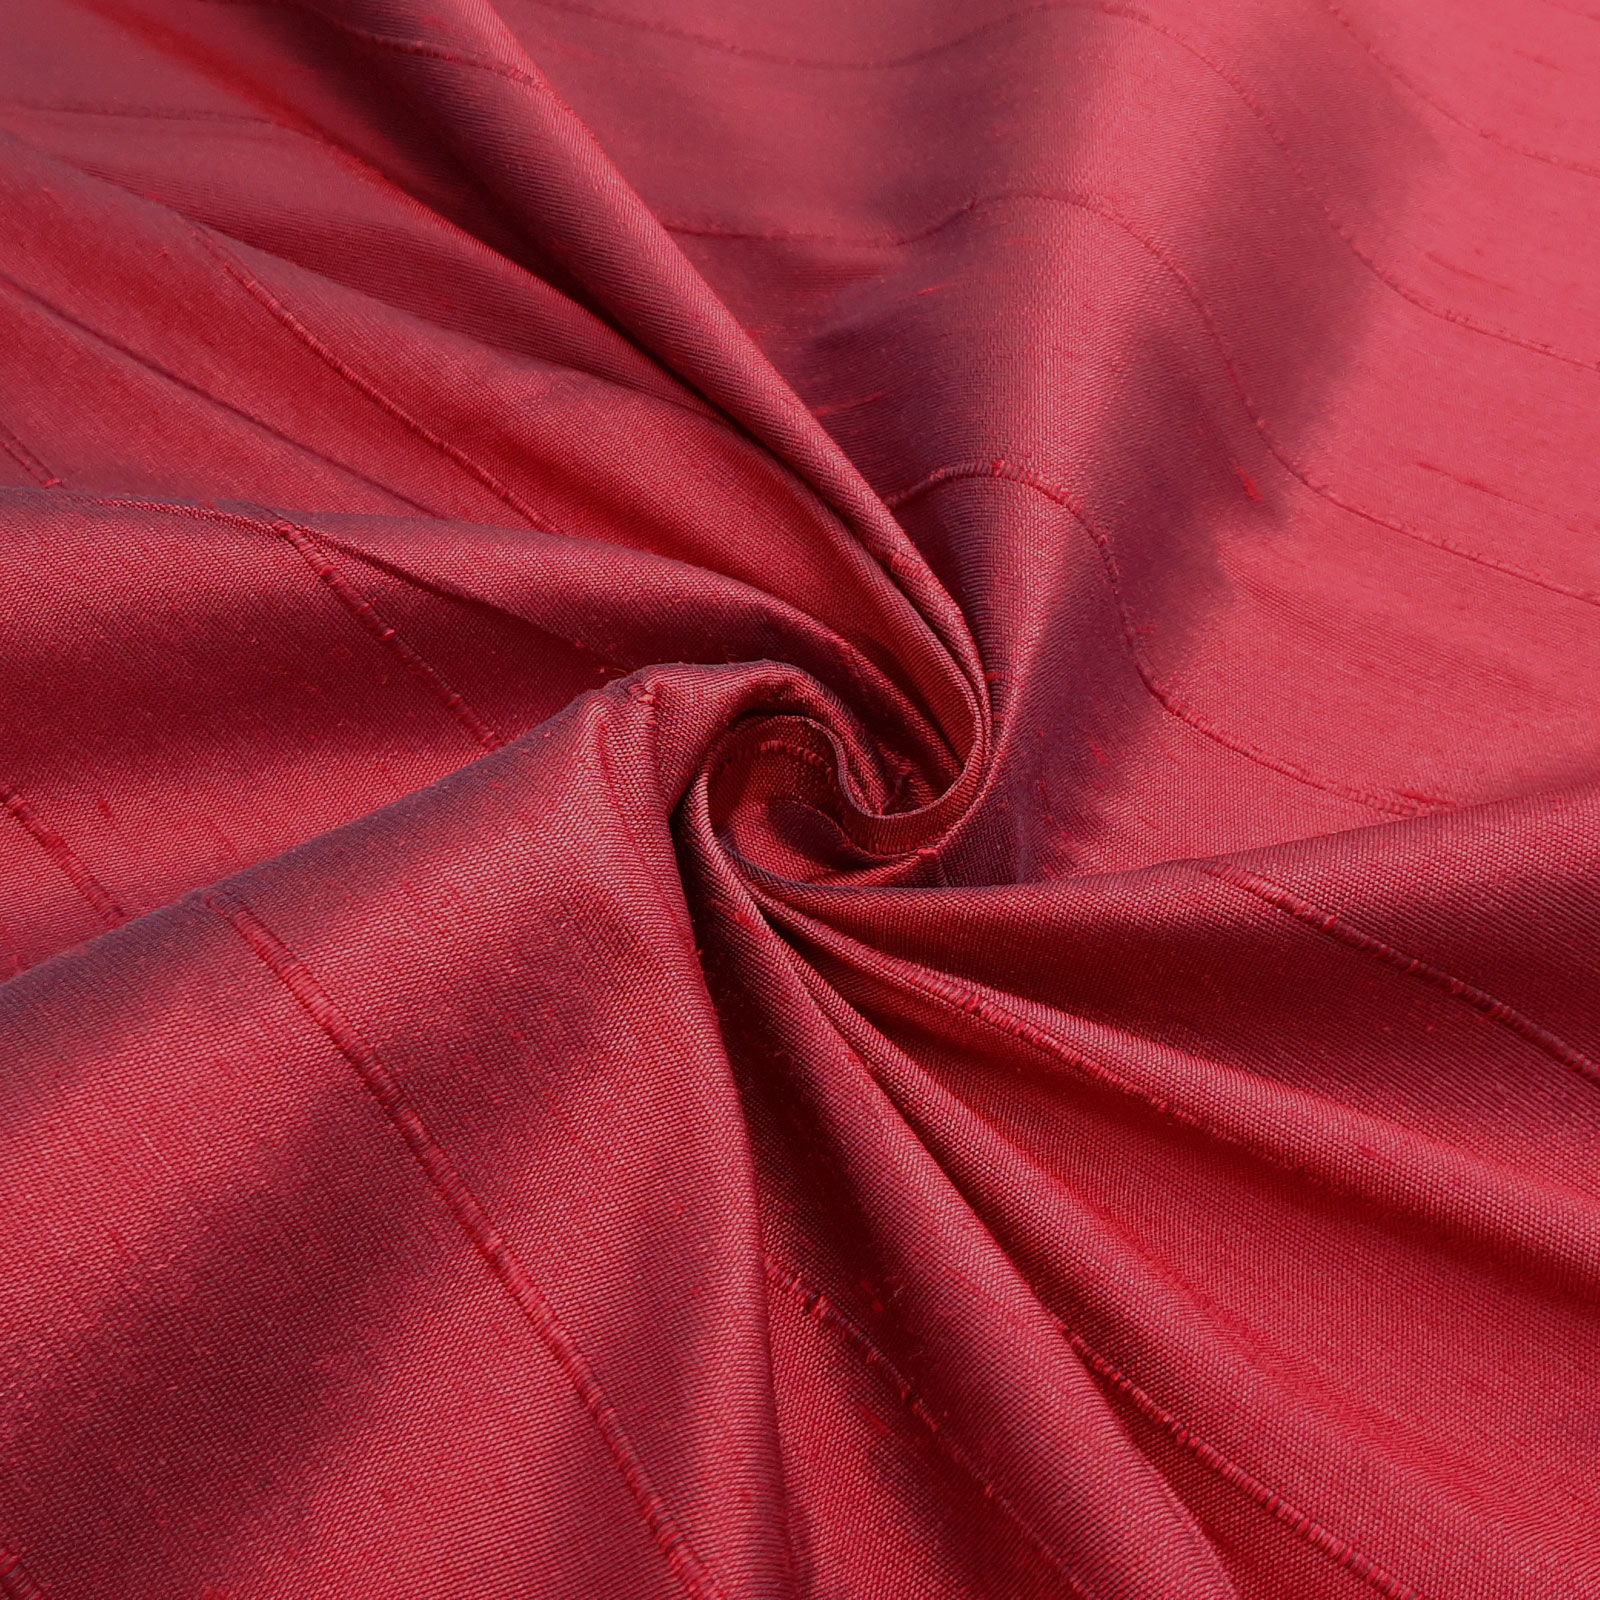 Sahco® B057 - Tissu d'ameublement et de décoration - 100% soie – Rubis